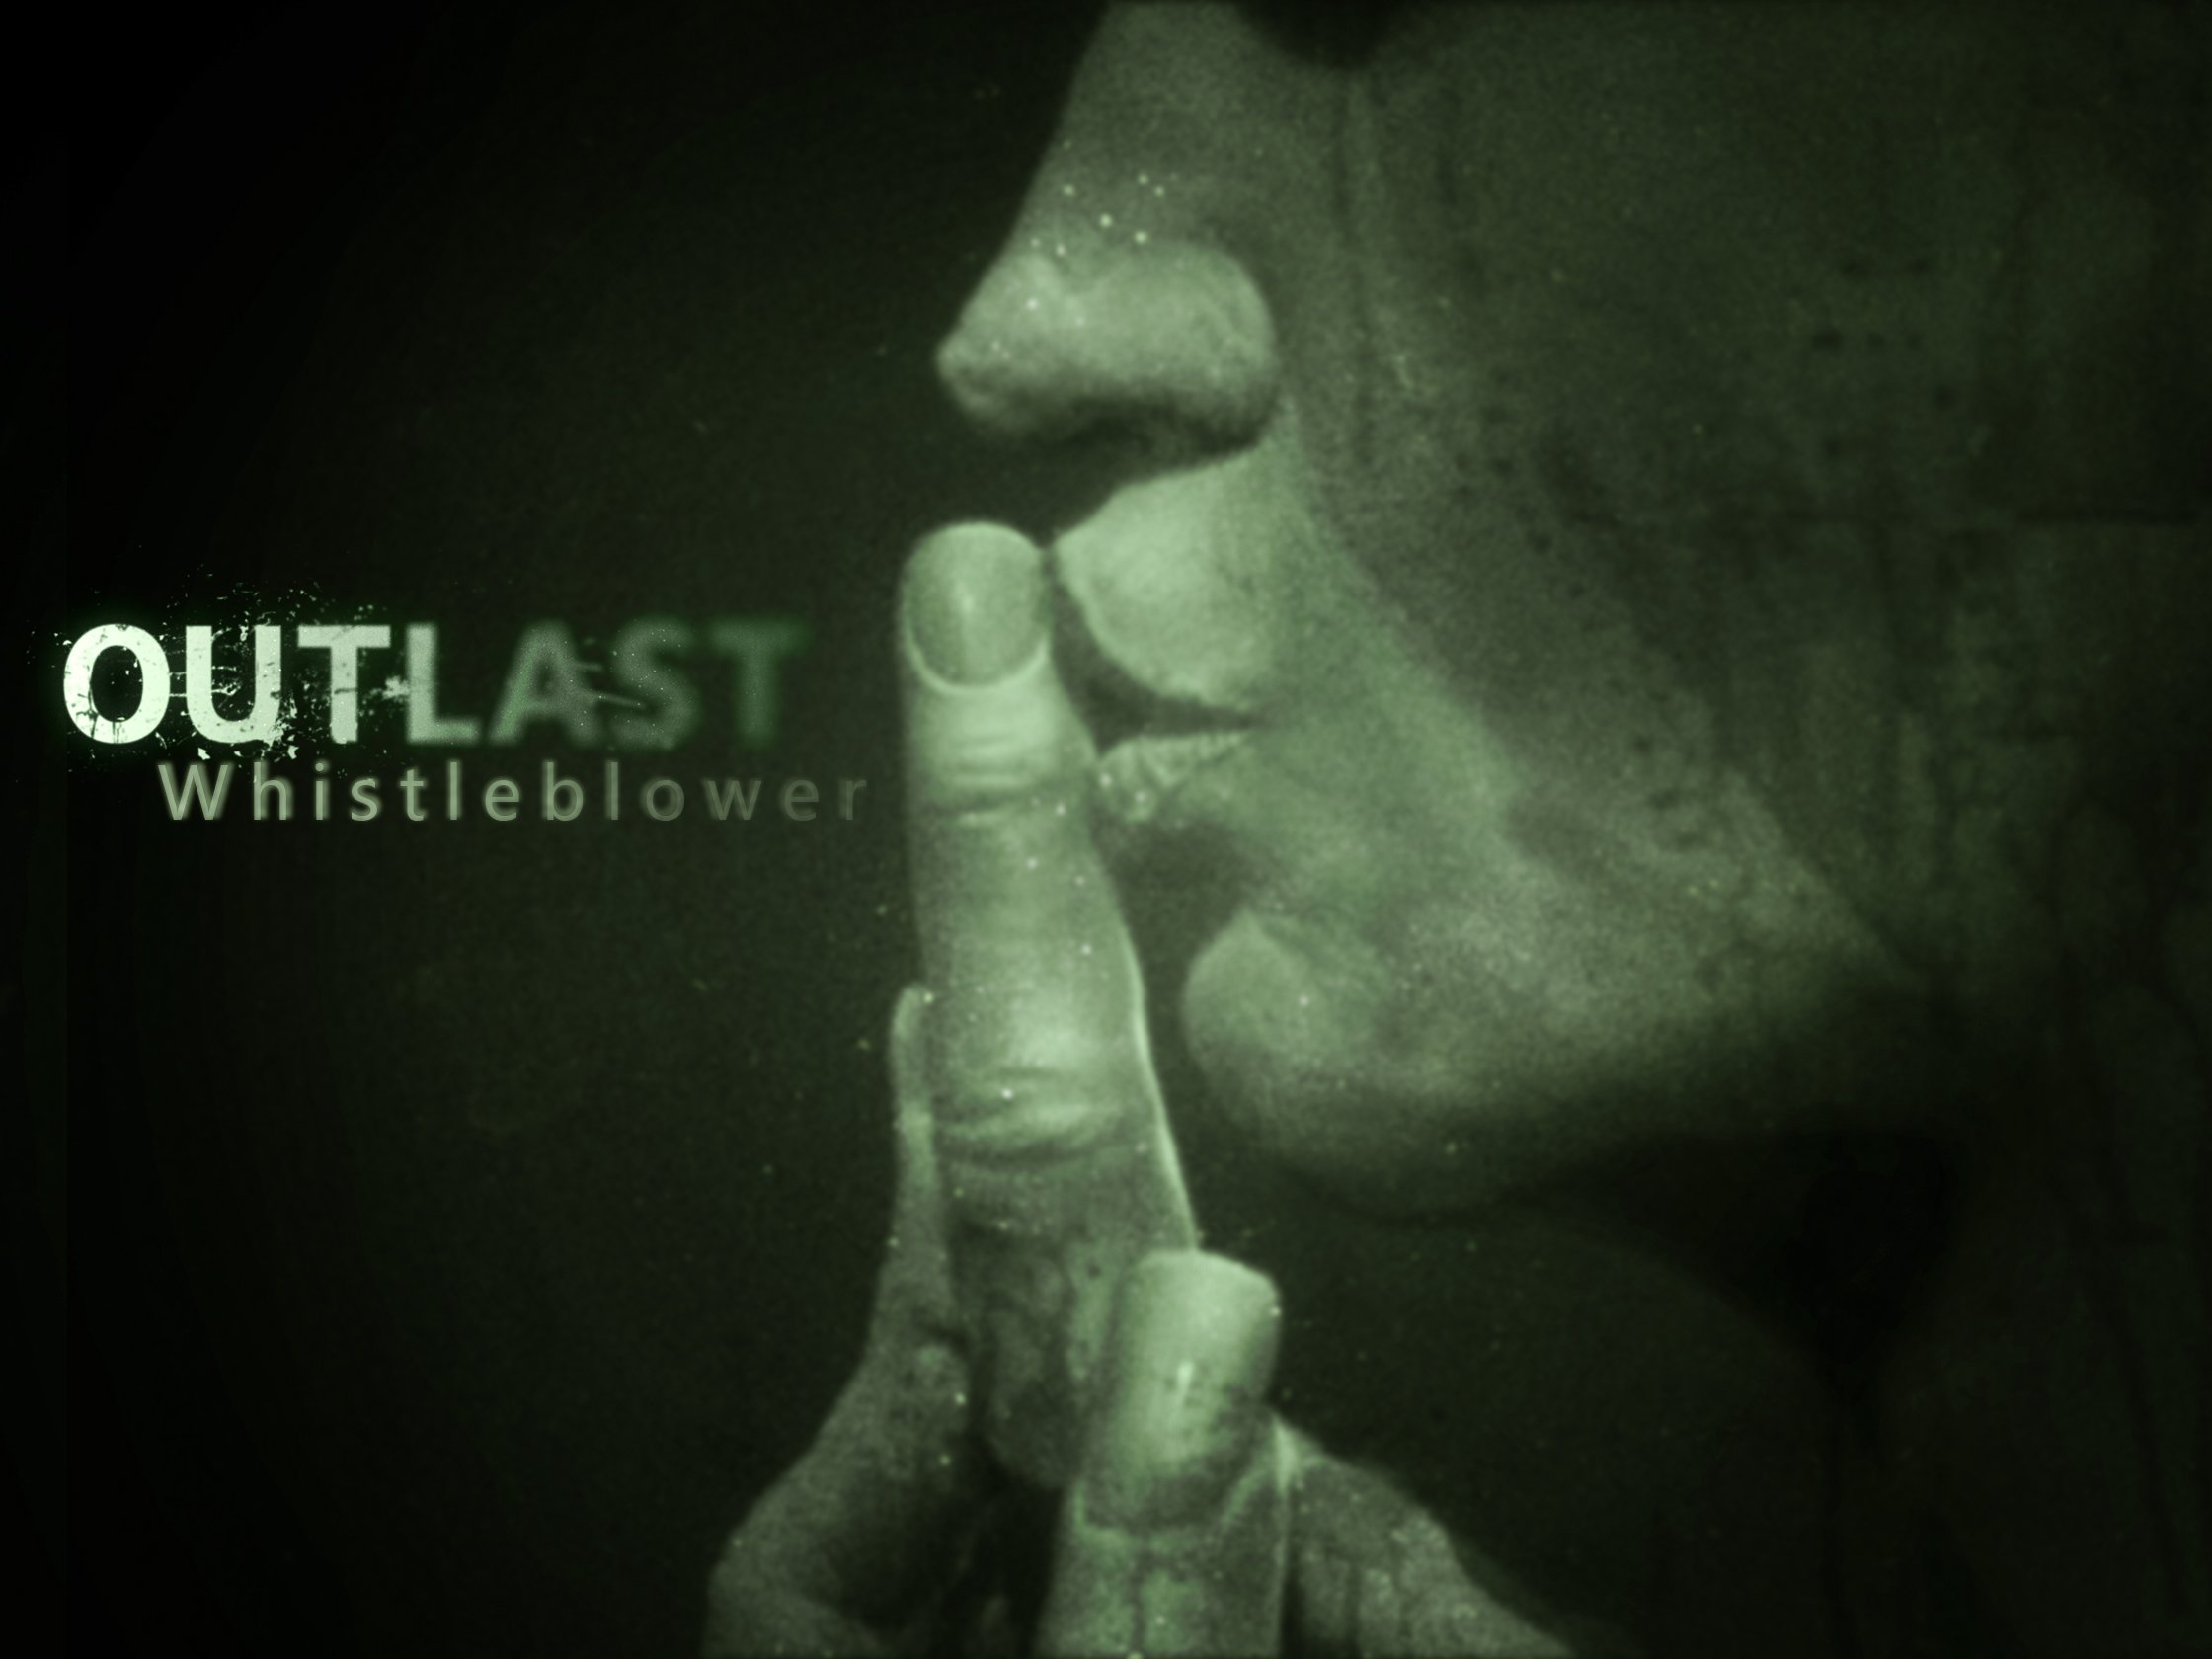 Outlast : Whistleblower